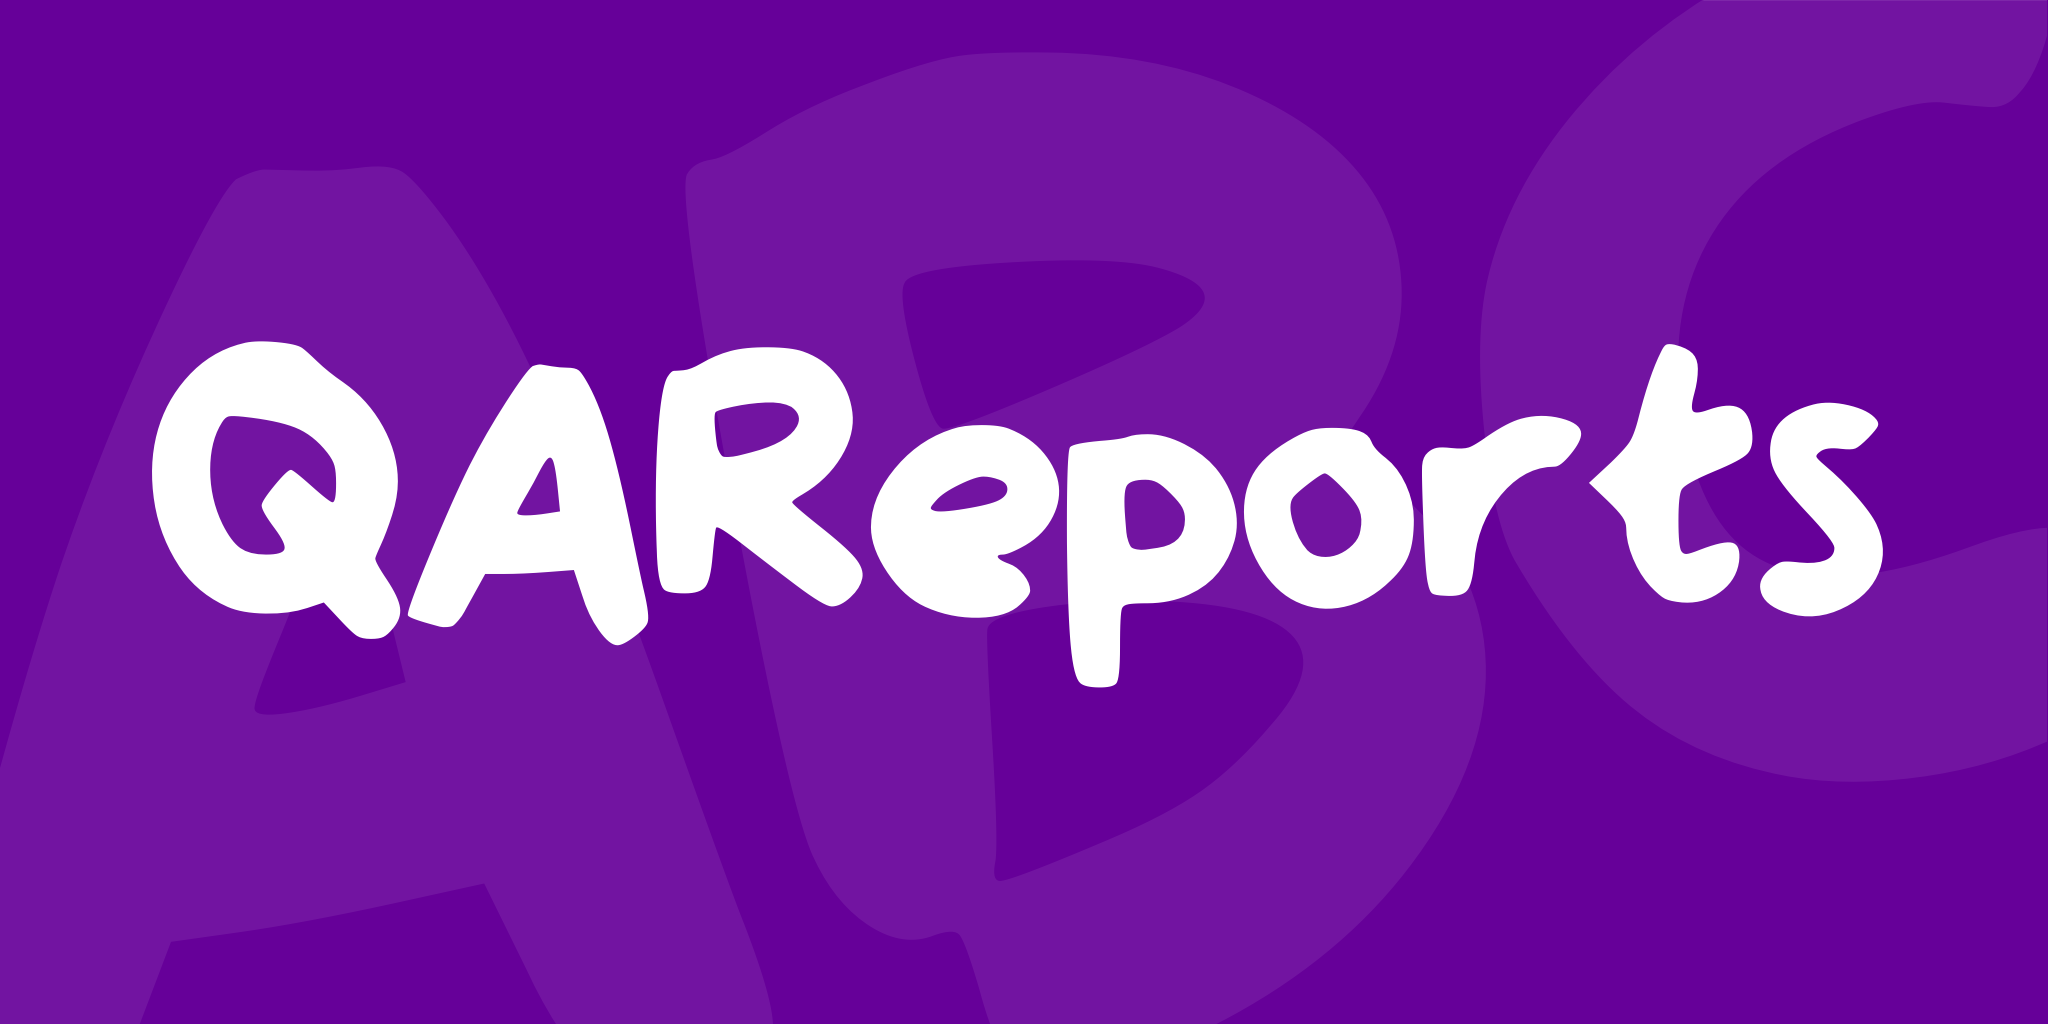 Qa Reports